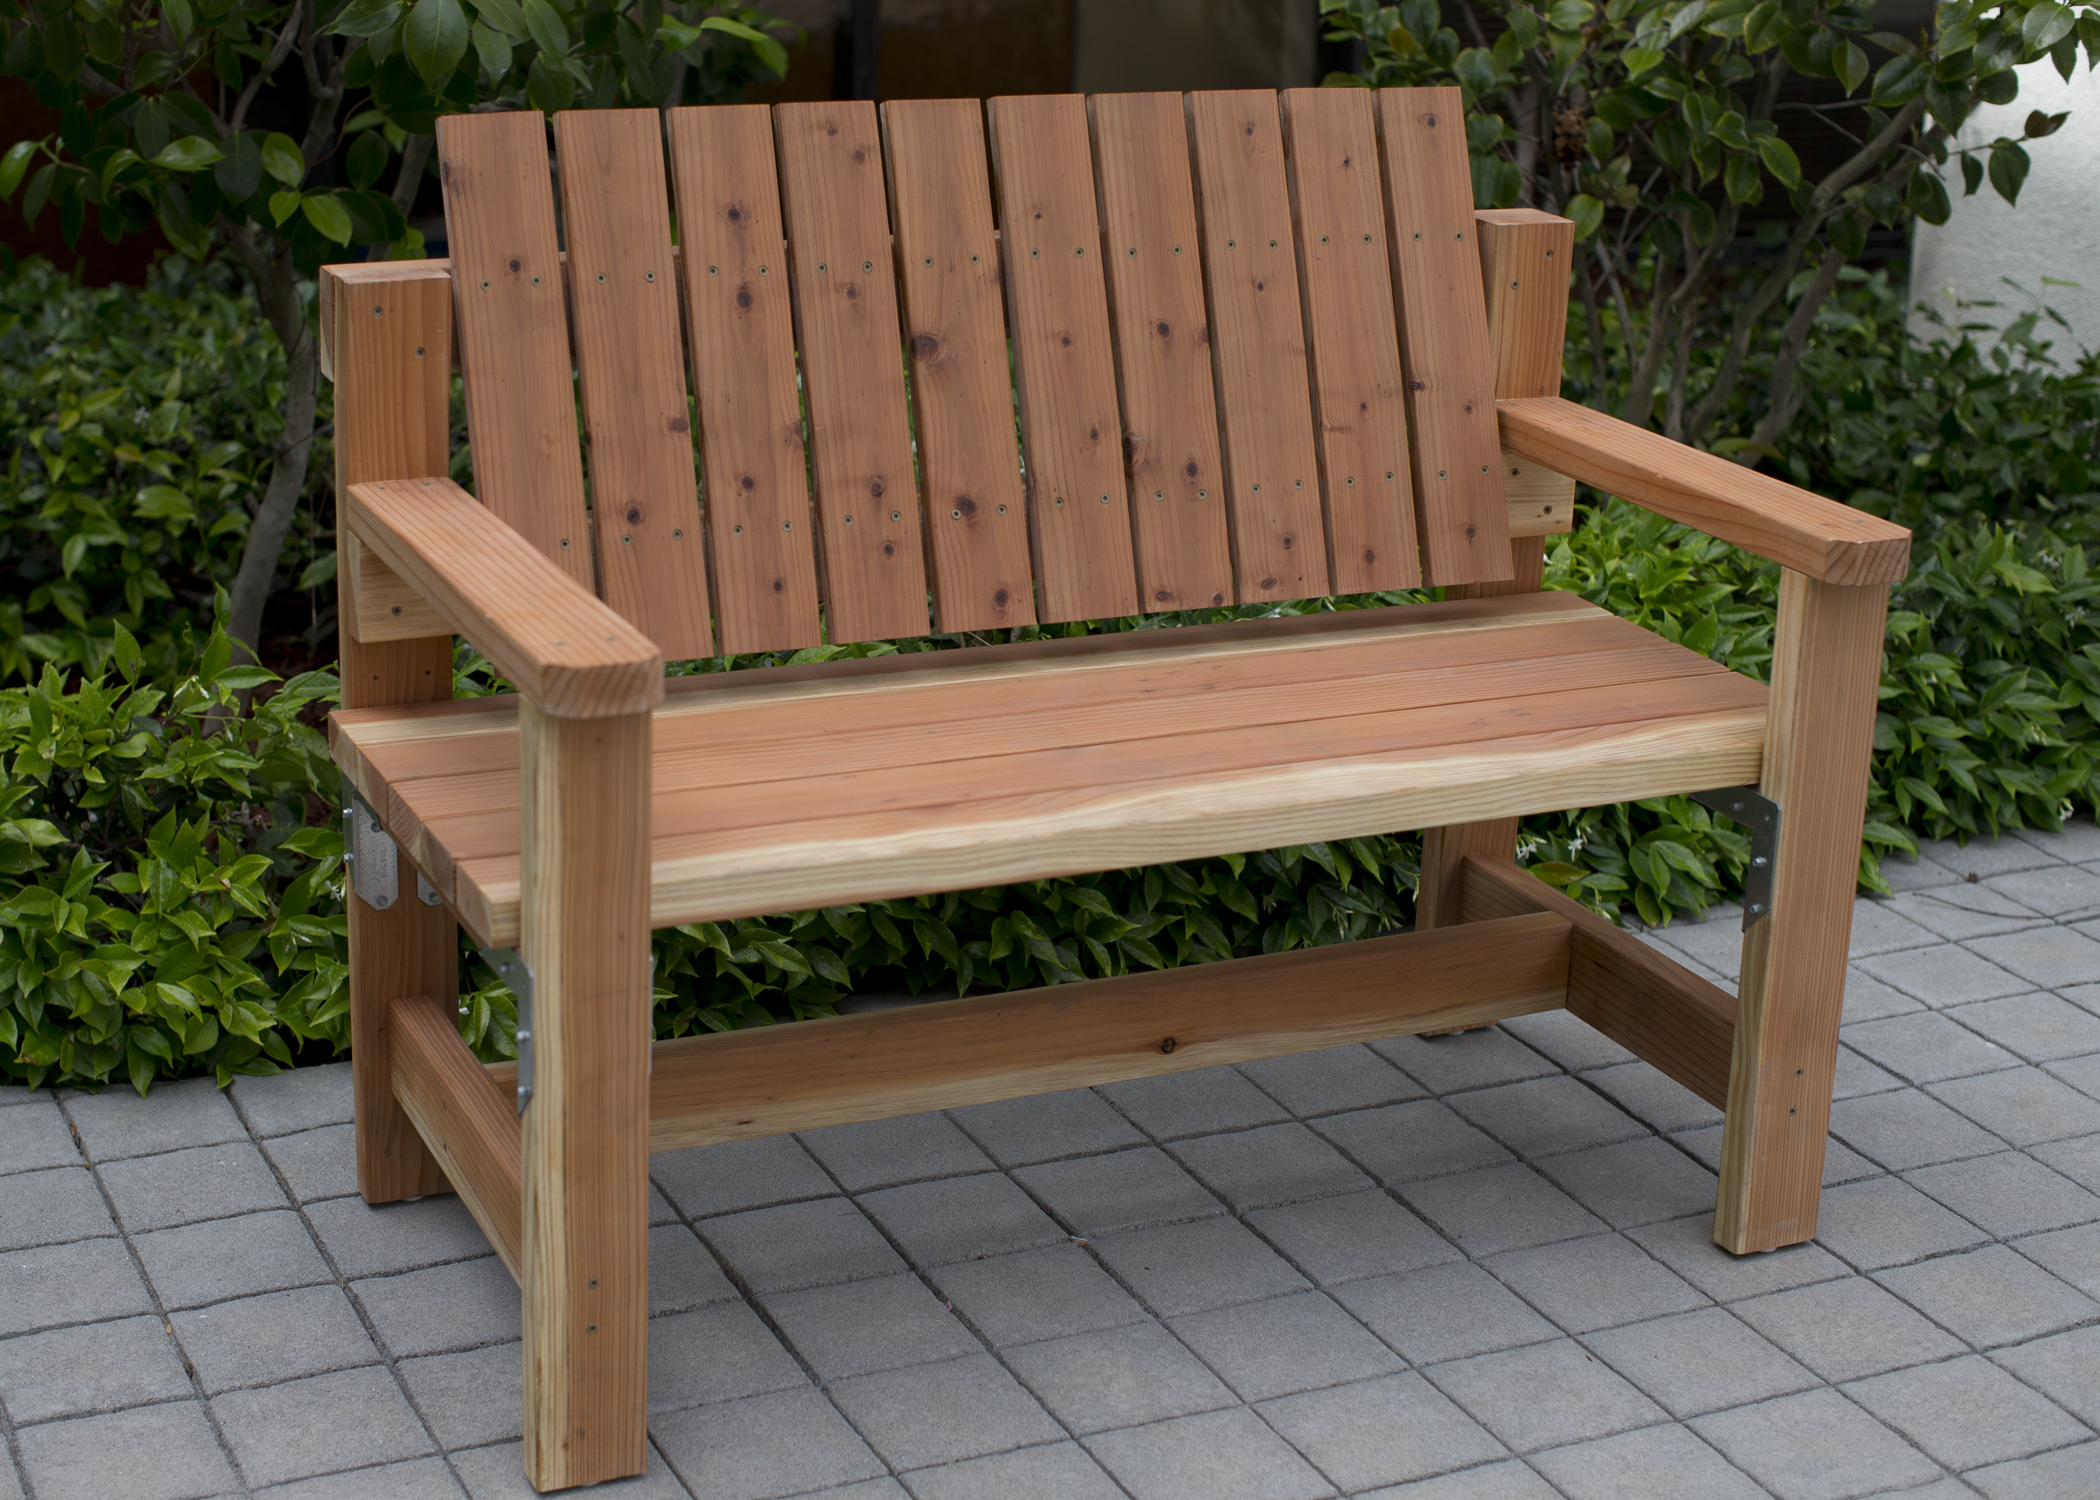  build a garden bench